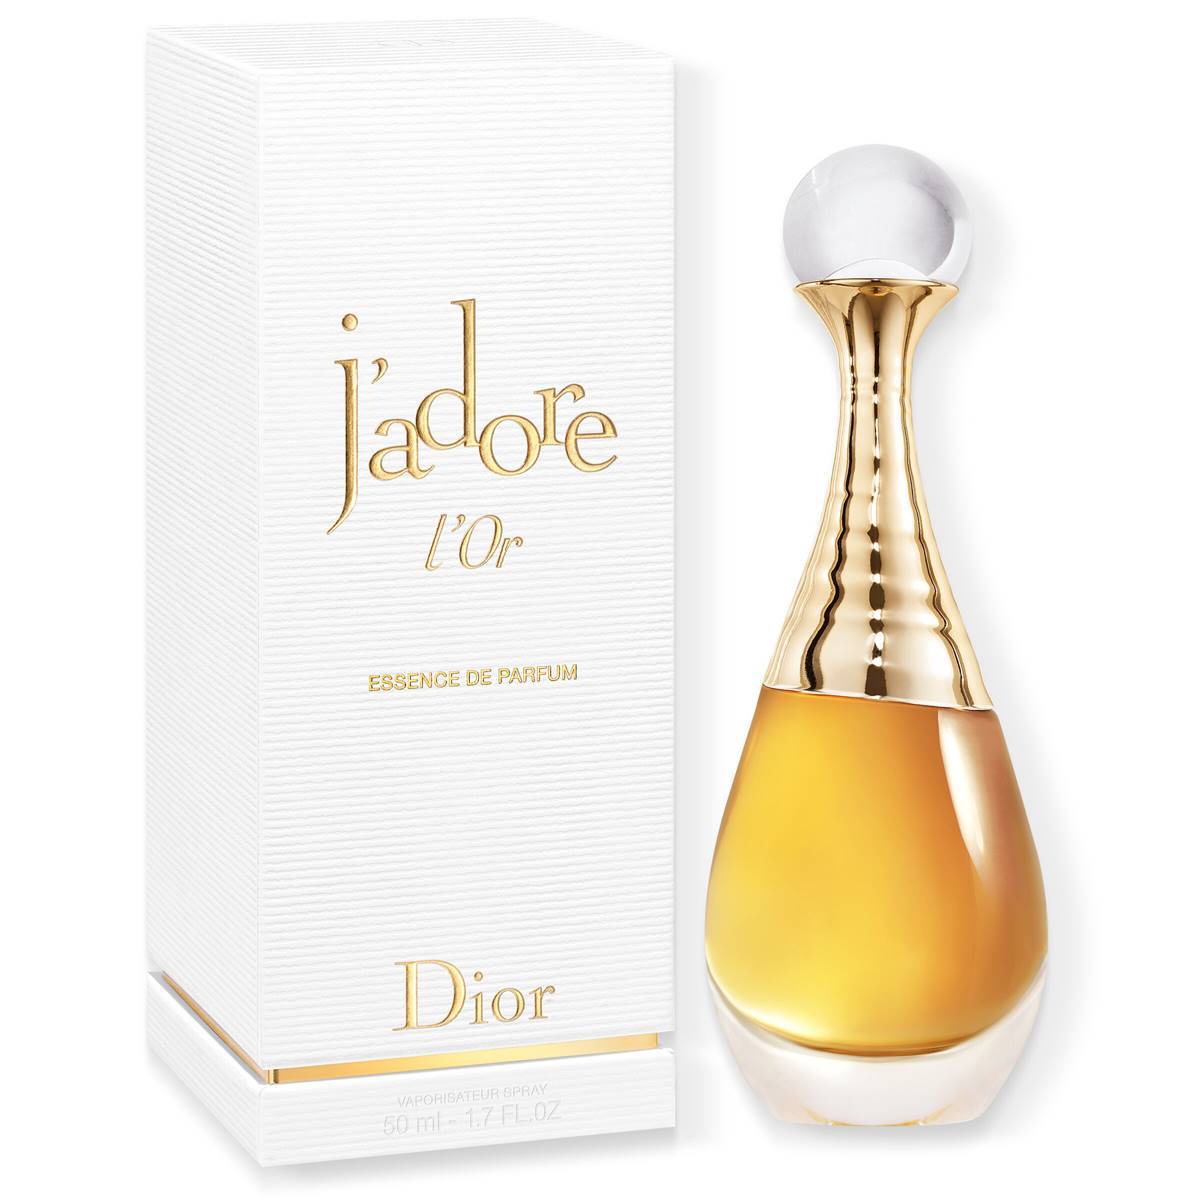 Dior J'Adore L'or Essence De Parfum - 1.7oz.